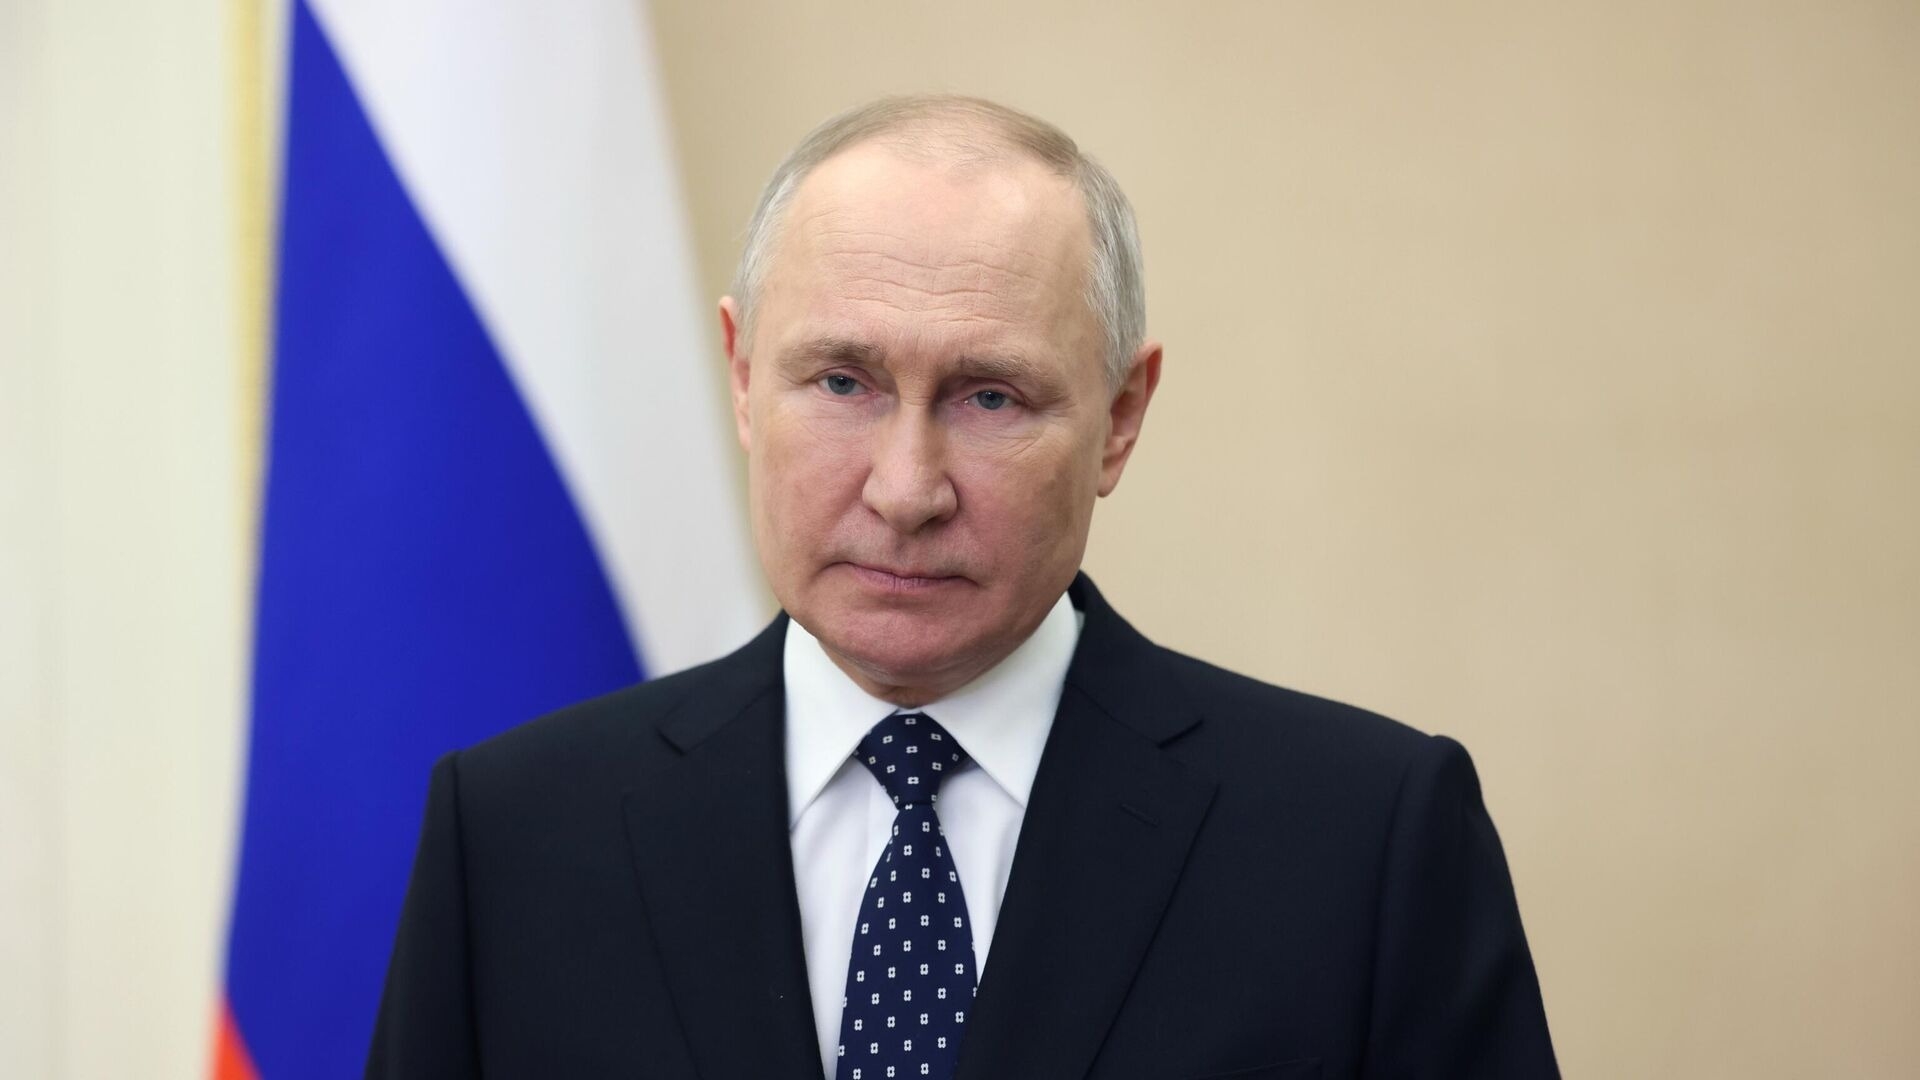 Путин: всё, что связано с Россией, пытаются «отменить»